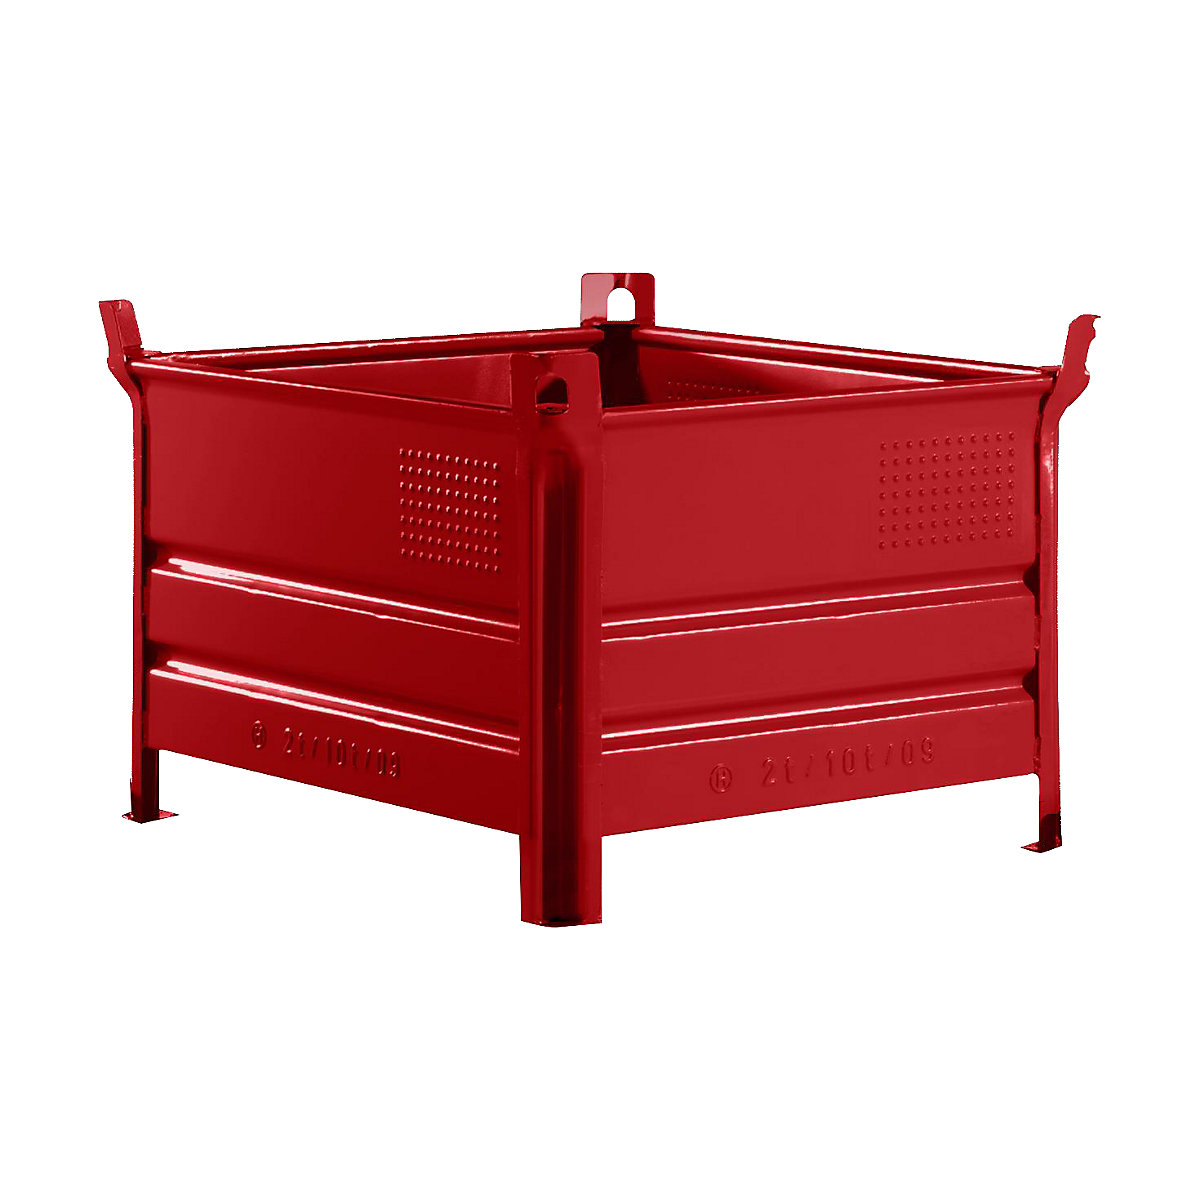 Pojemnik do ustawiania w stos z pełnymi ściankami – Heson, szer. x dł. 800 x 1000 mm, nośność 1000 kg, czerwony, od 10 szt.-6